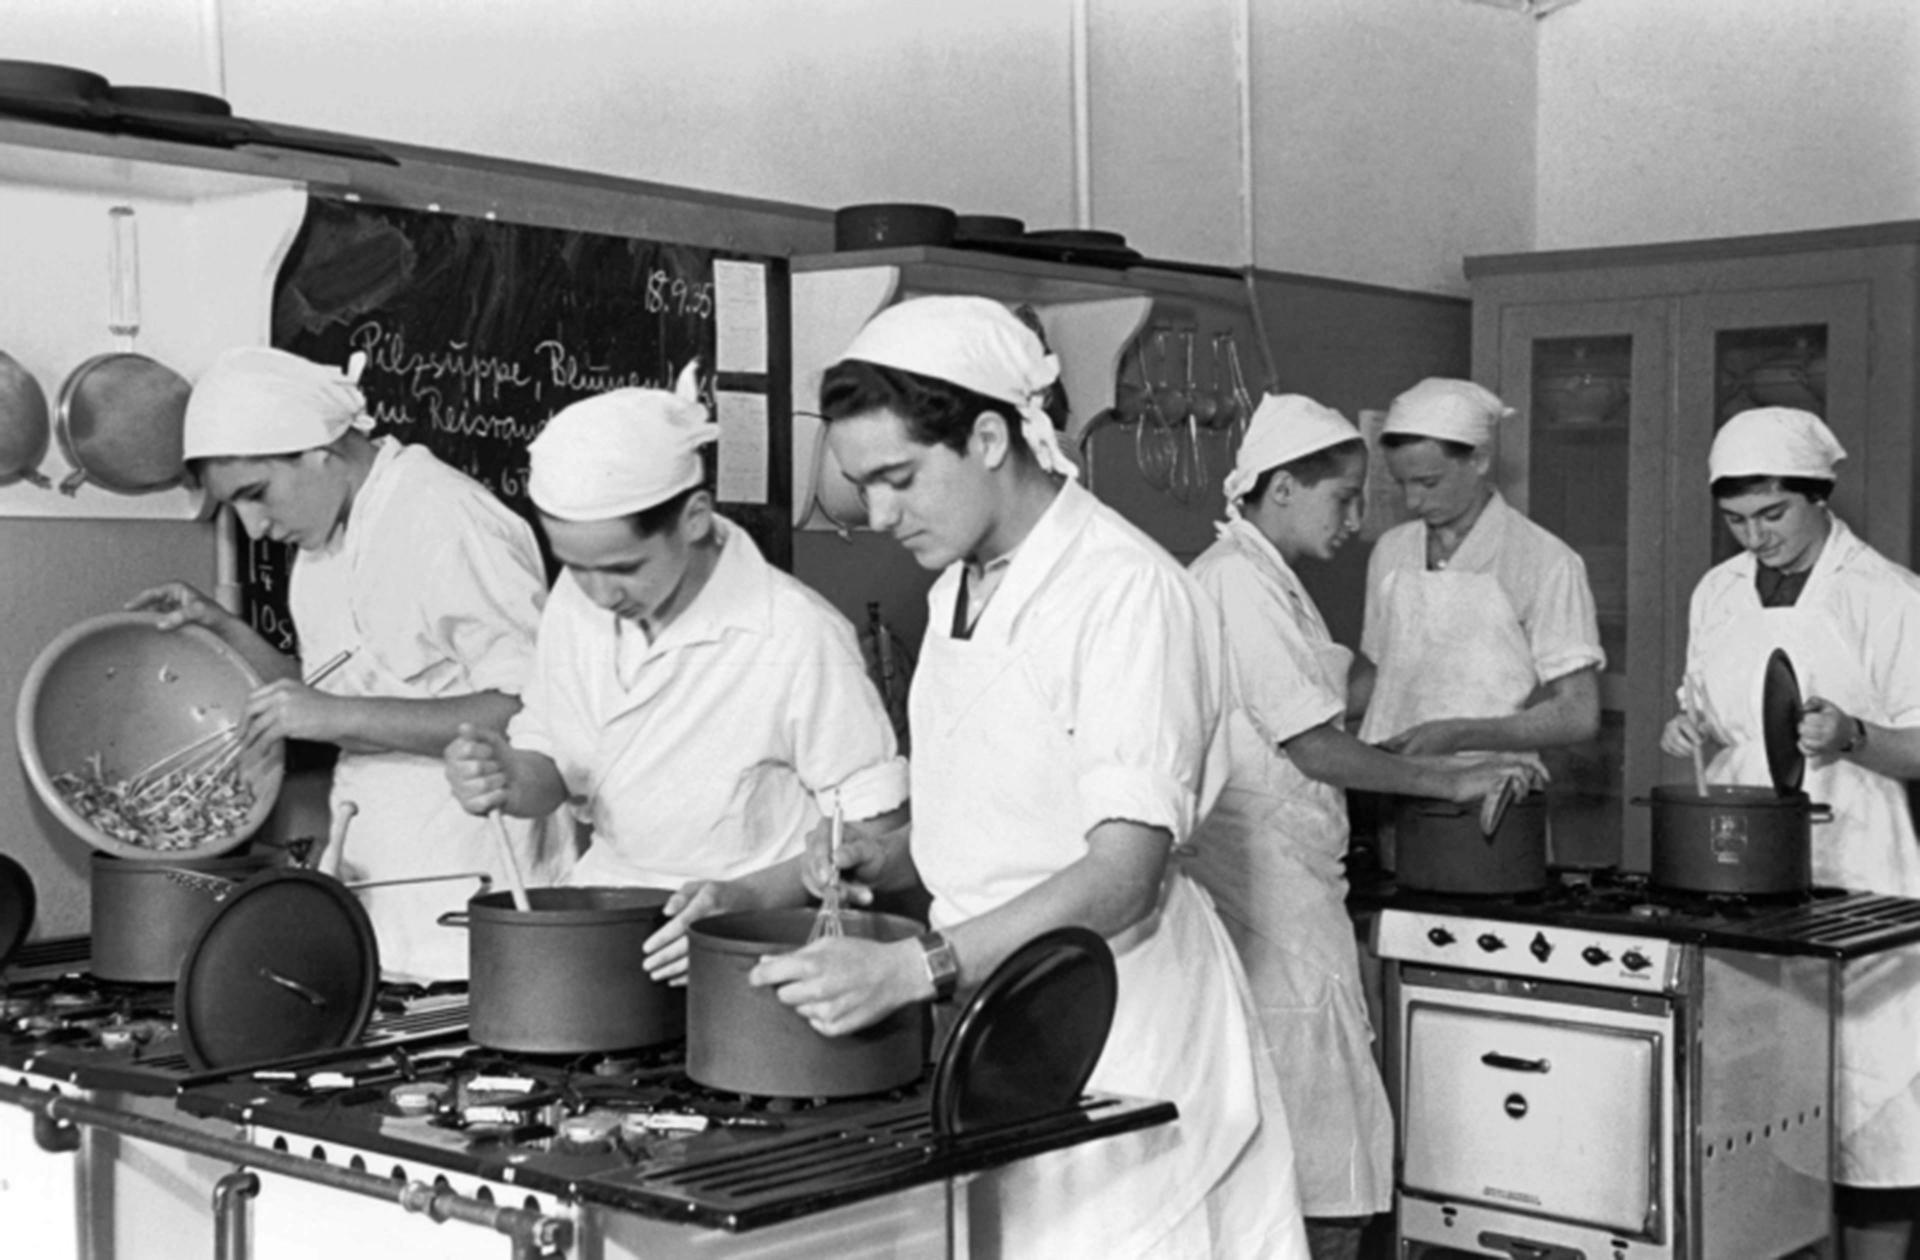 Schwarz-Weiß-Fotografie von sechs Schülern in der Küche der Theodor-Herzl-Schule mit weißen Schürzen und weißen Kopftüchern am Herd stehend in Töpfen rührend